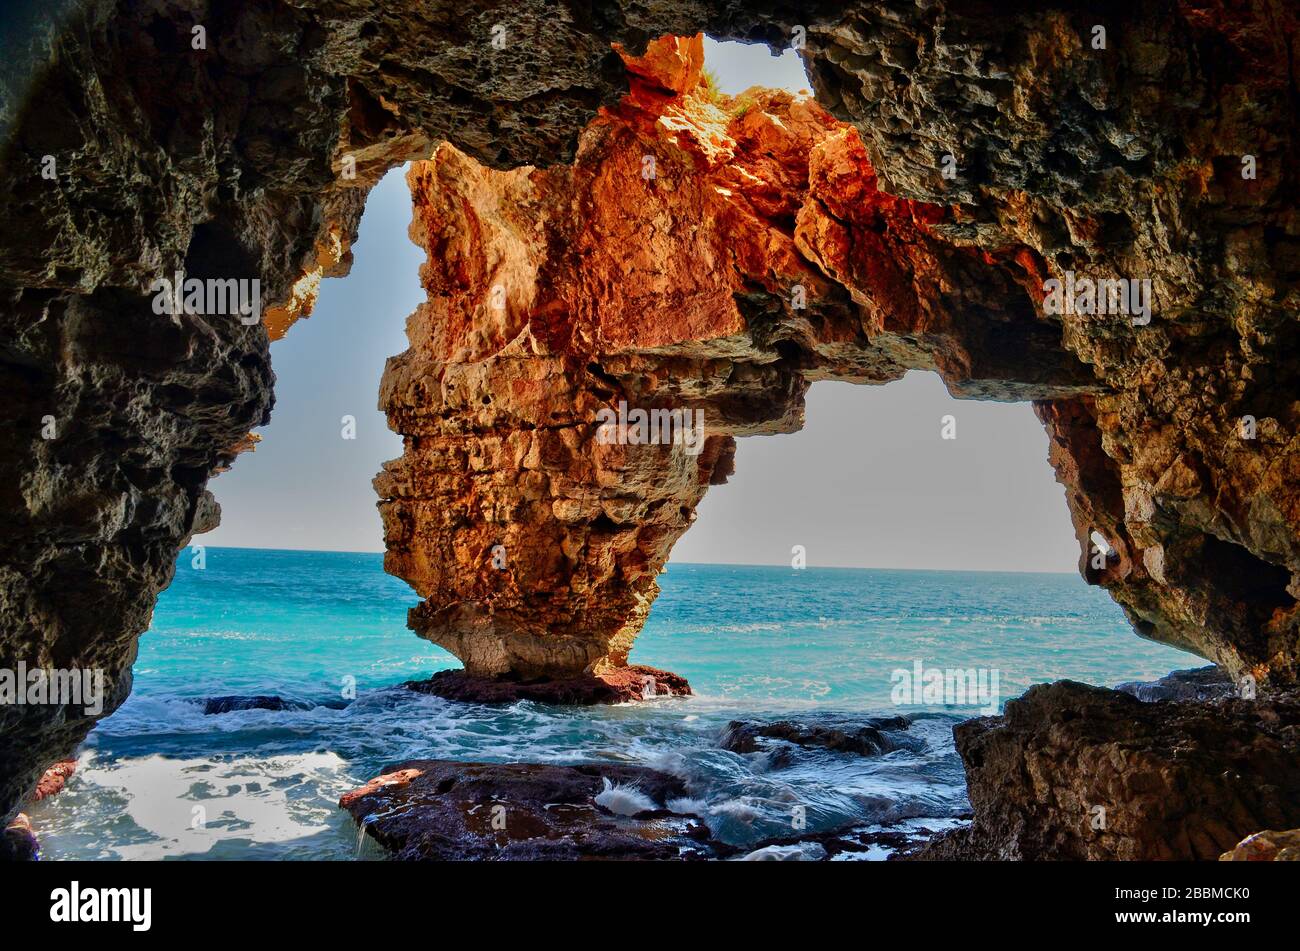 Gli splendidi archi naturali dell'oceano, a Cala Moraig sulla Costa Blanca in Spagna. Foto Stock